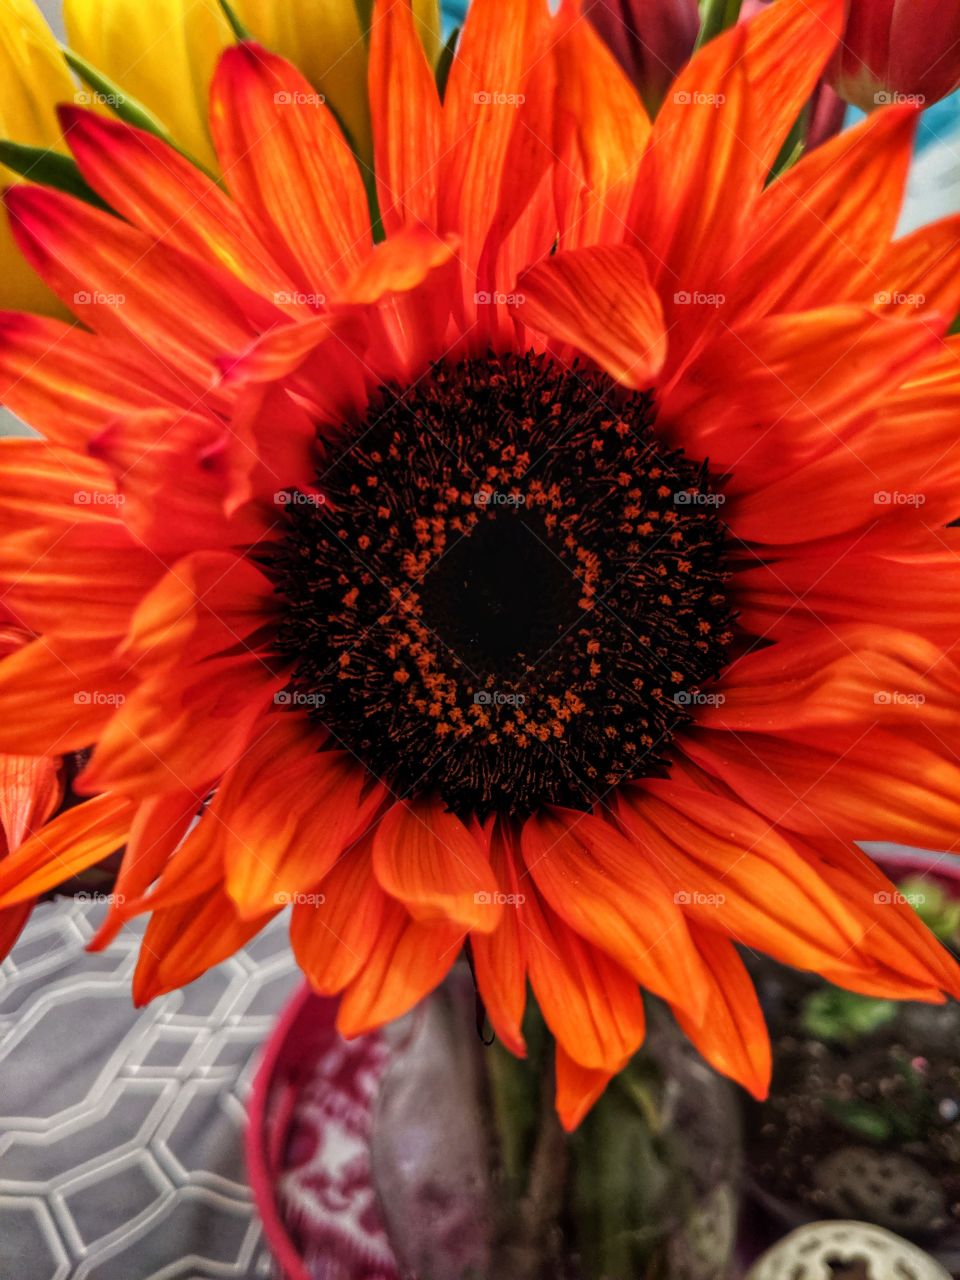 my wife's flower.